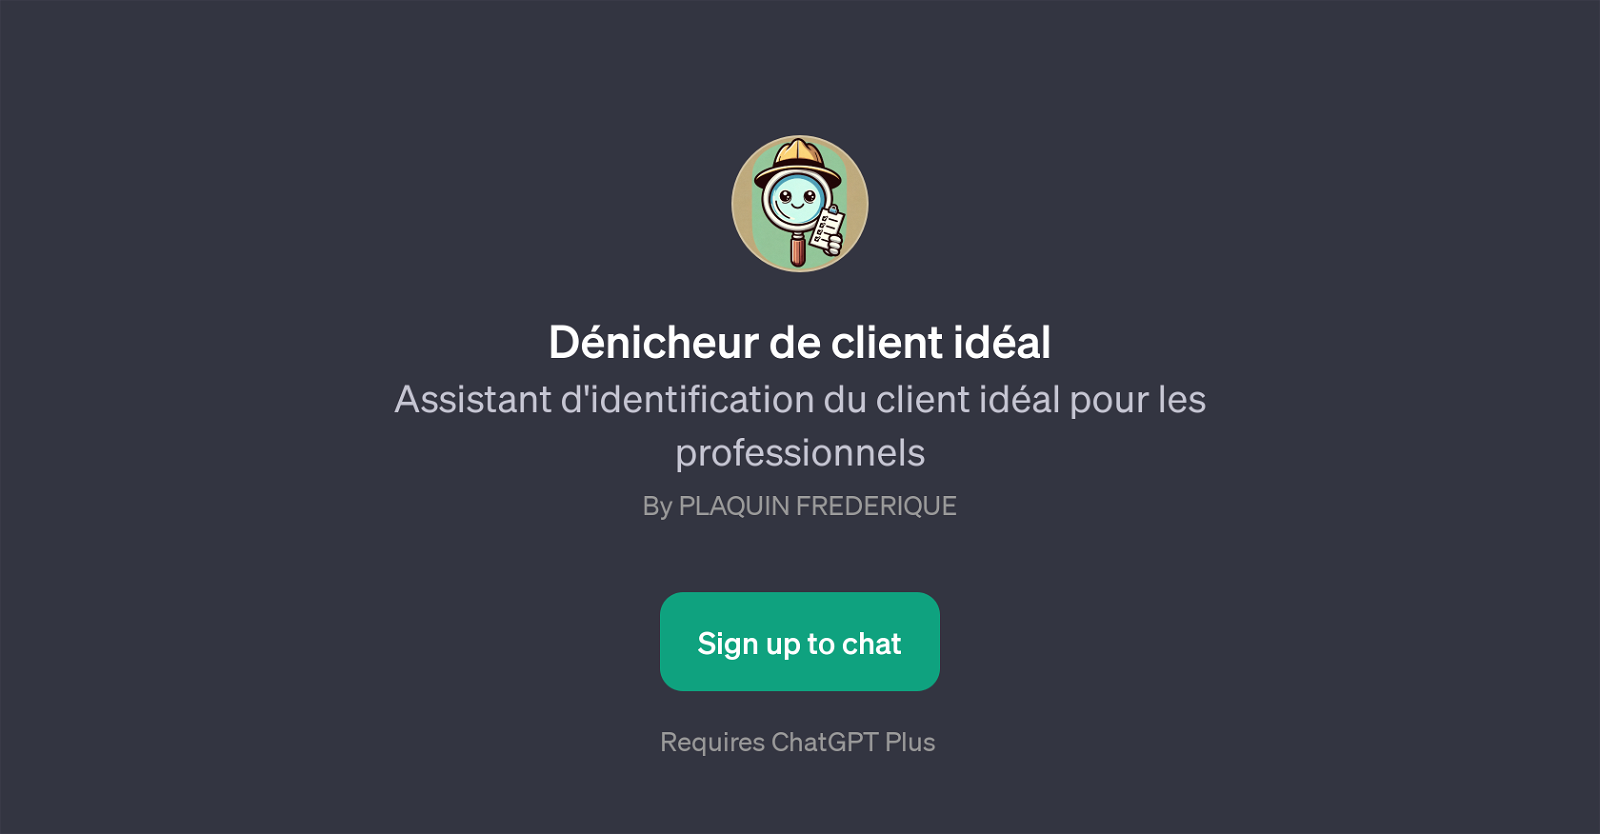 Dnicheur de client idal website